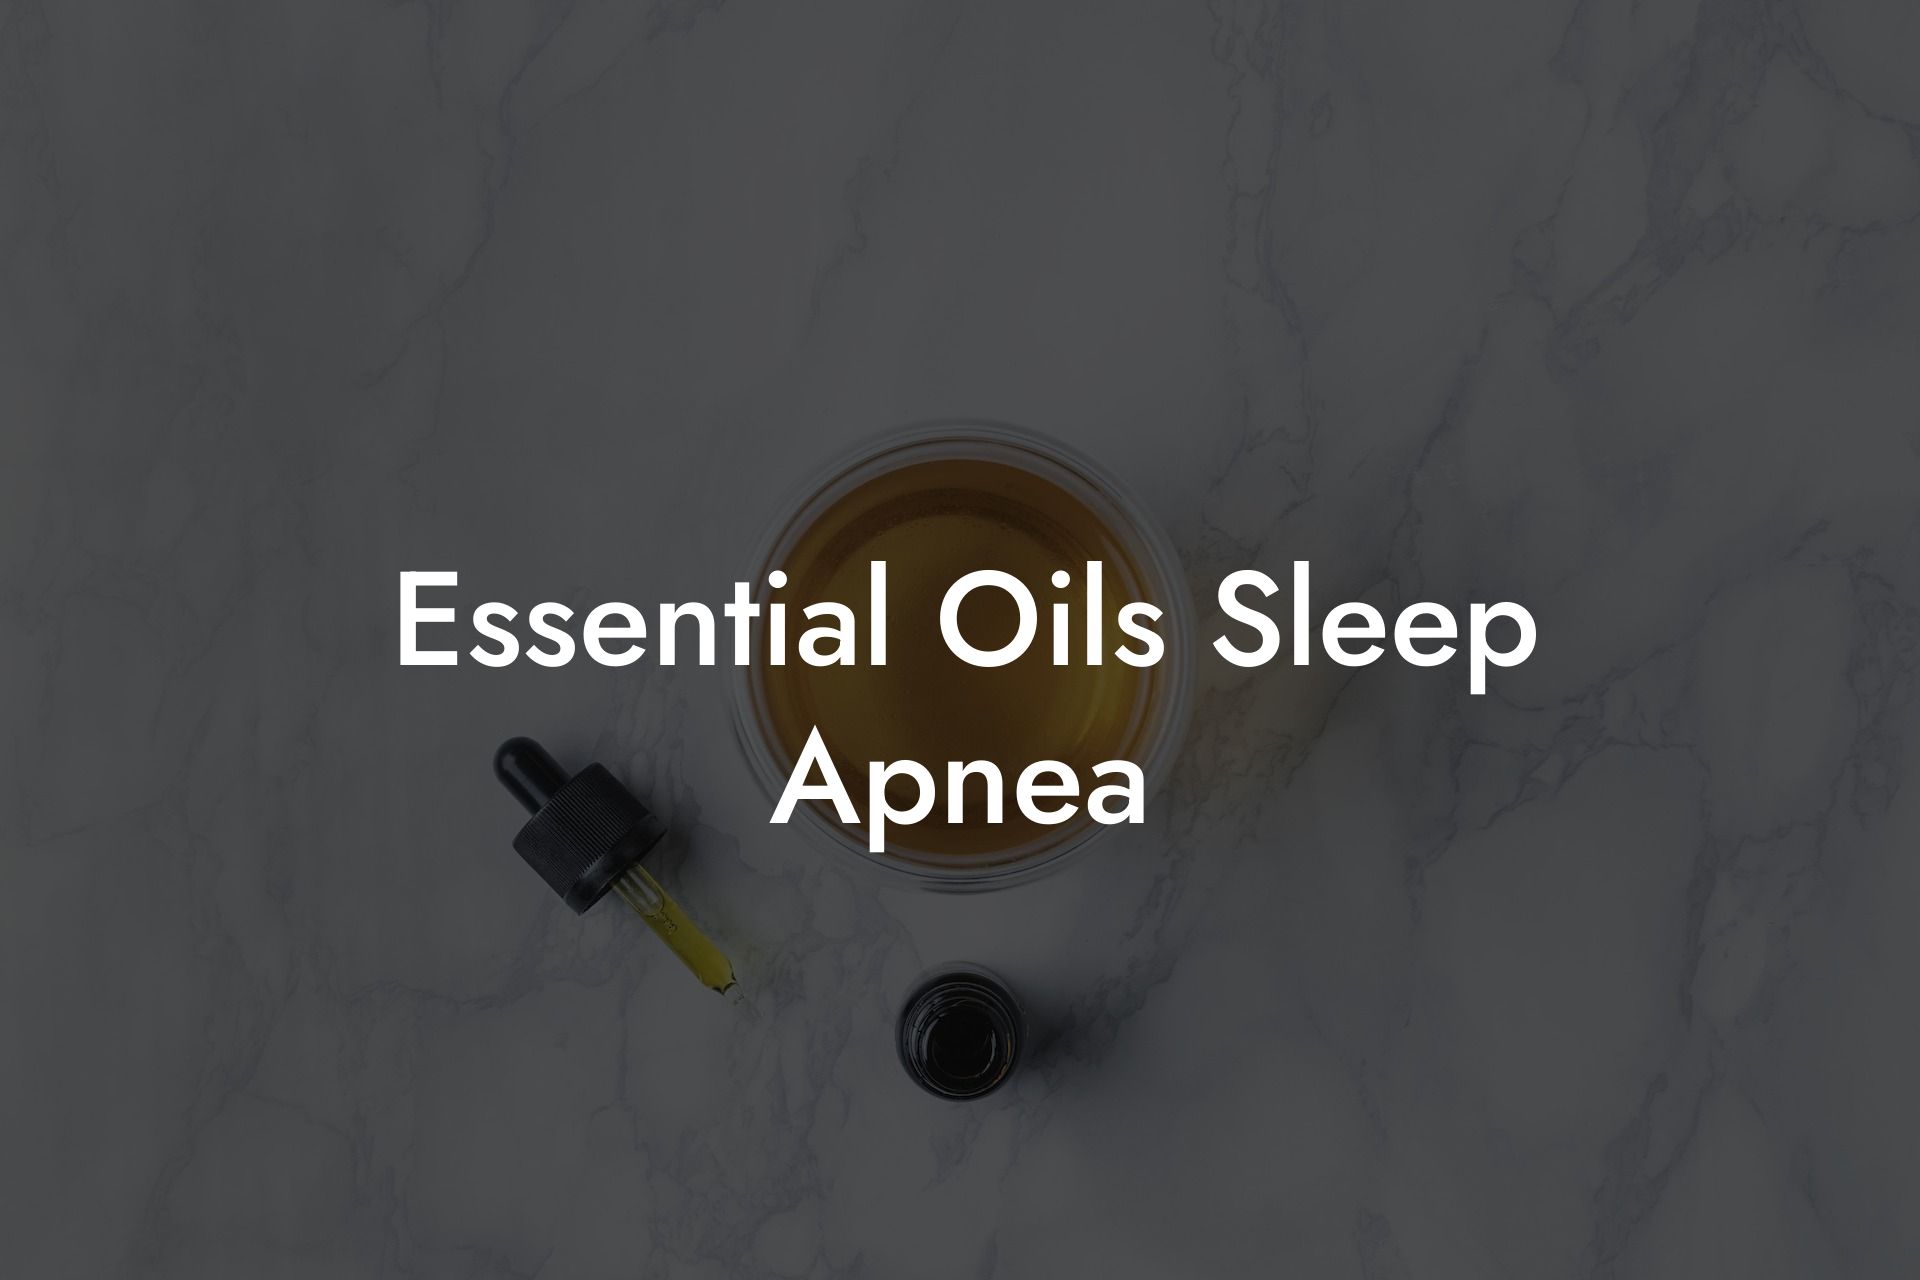 Essential Oils Sleep Apnea